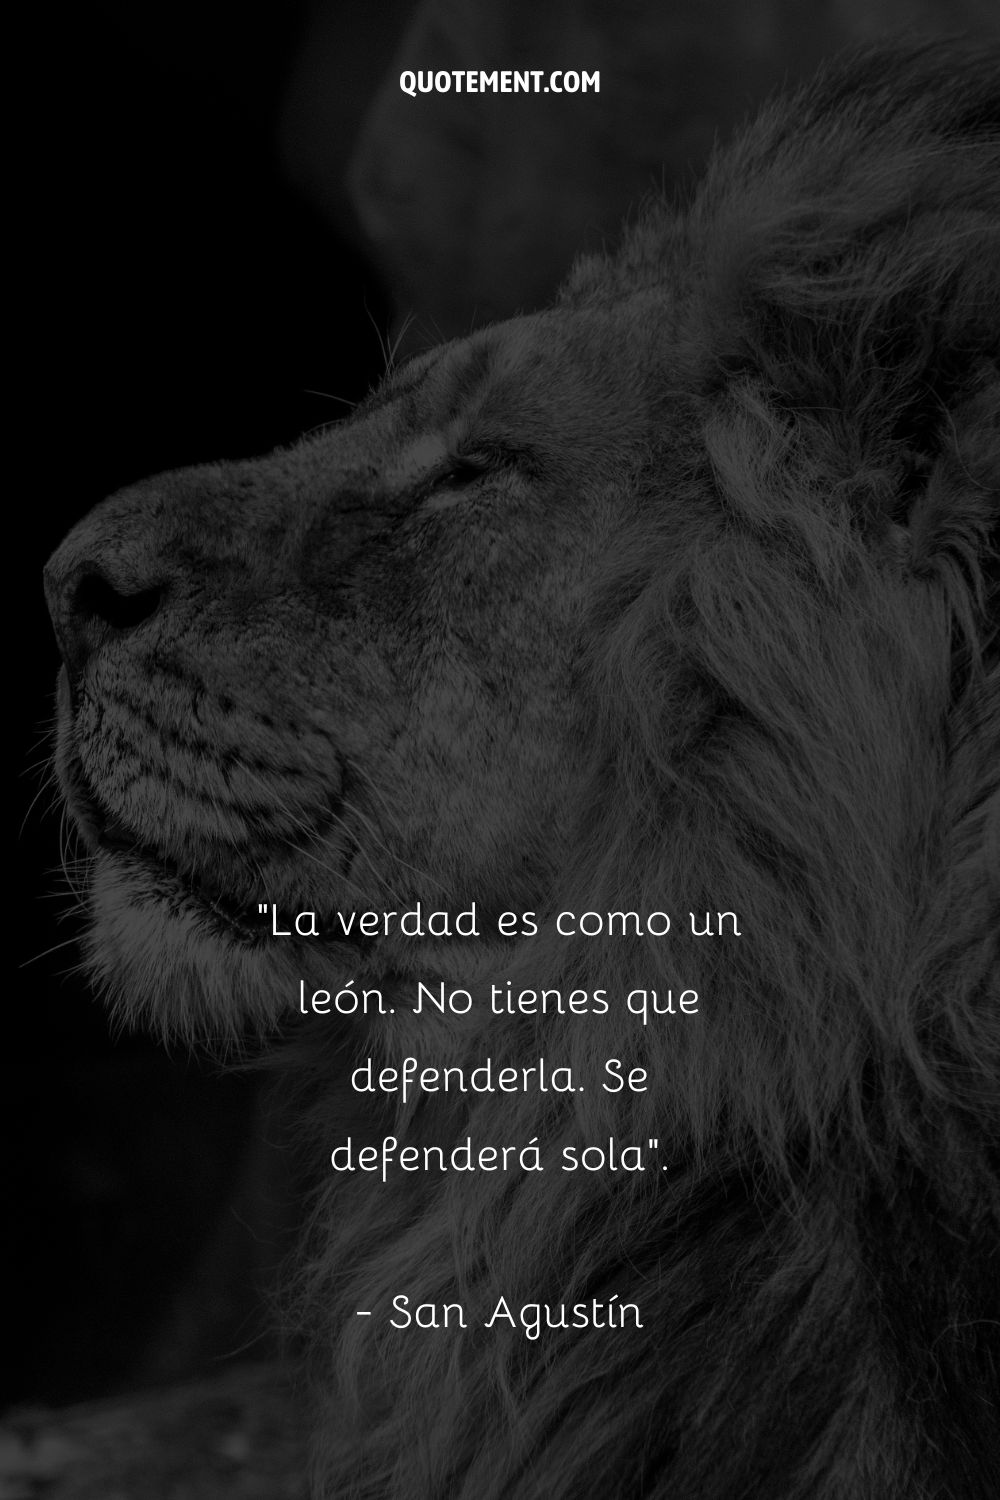 La verdad es como un león. No tienes que defenderla. Se defenderá sola